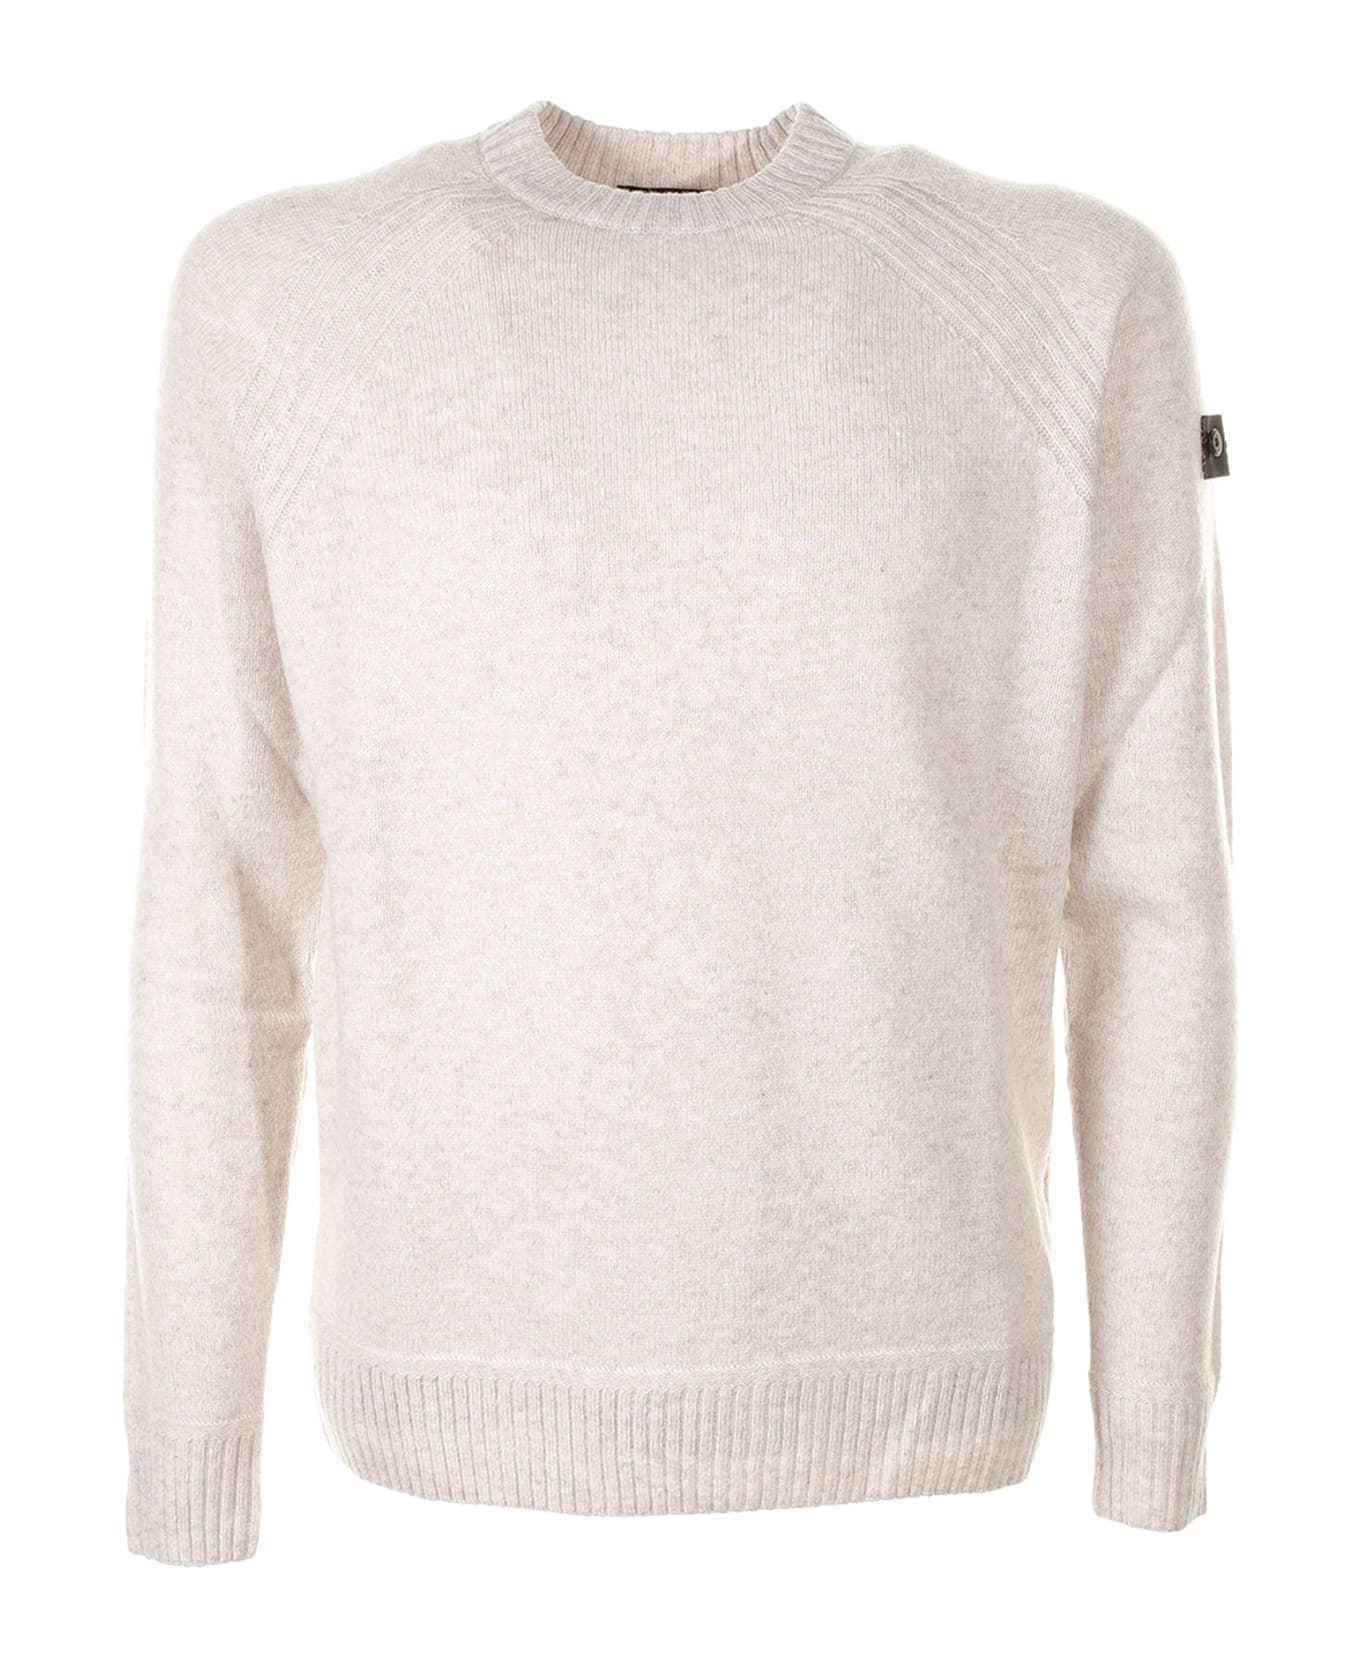 Peuterey White Crew-neck Sweater With Logo - FIOCCO AVENA ニットウェア